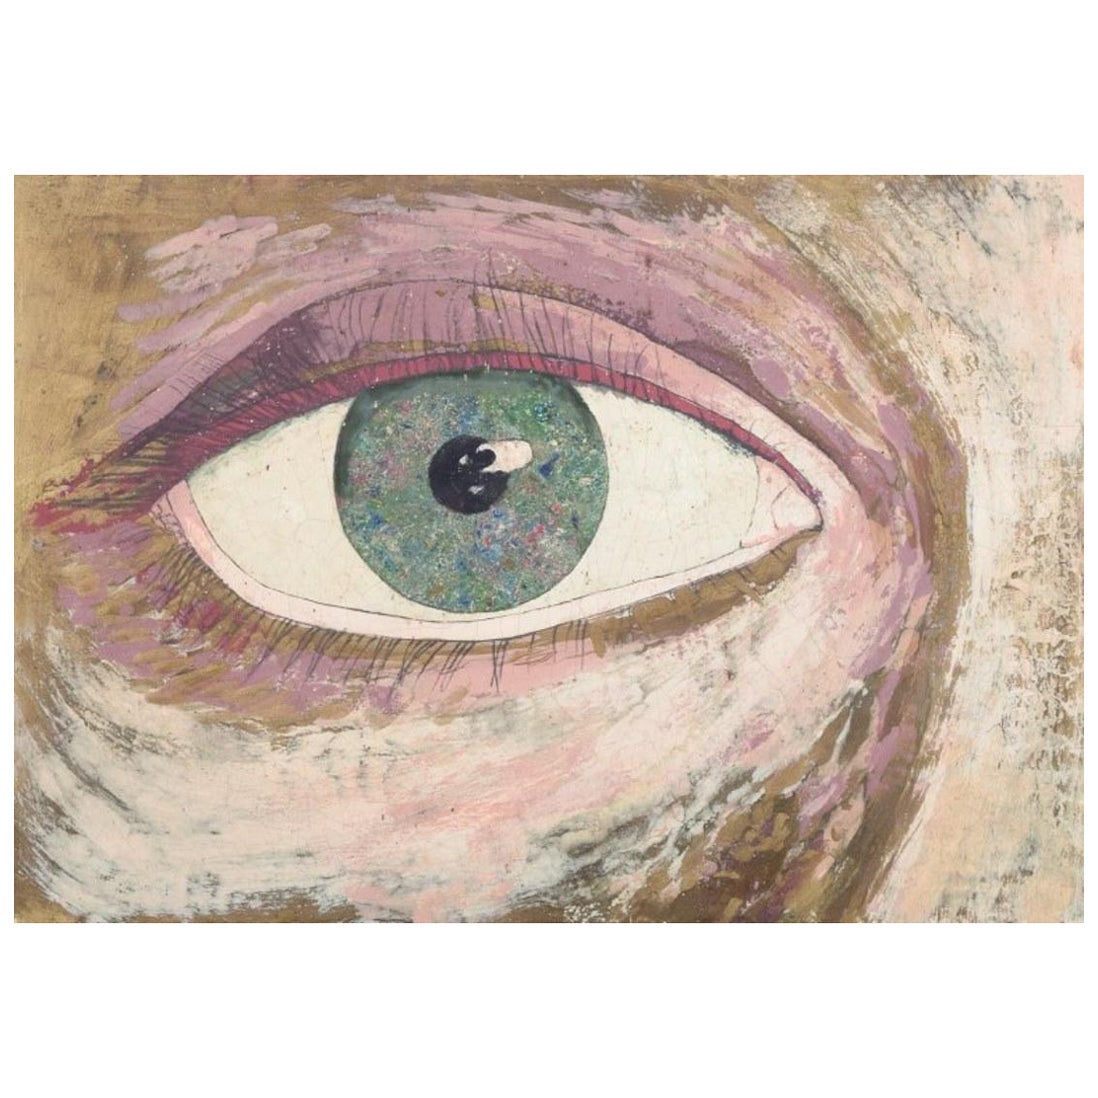 Ingvar Engdahl, schwedischer Künstler. Gemischte Medien auf Karton. Close-up-Ansicht eines Auges.